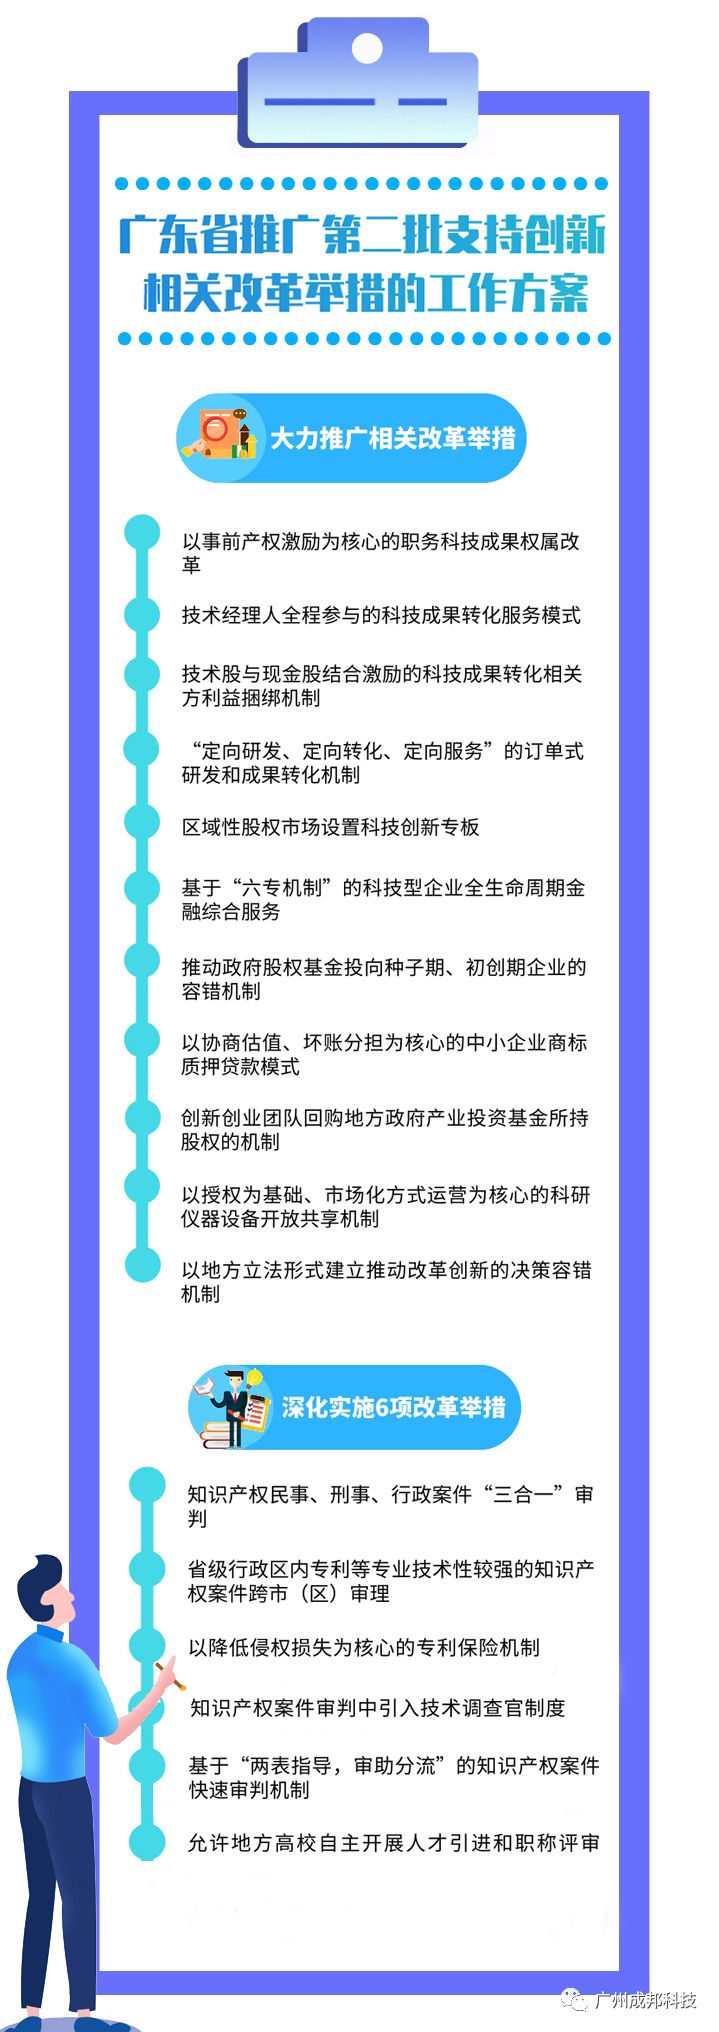 广东省推广第二批支持创新相关改革举措